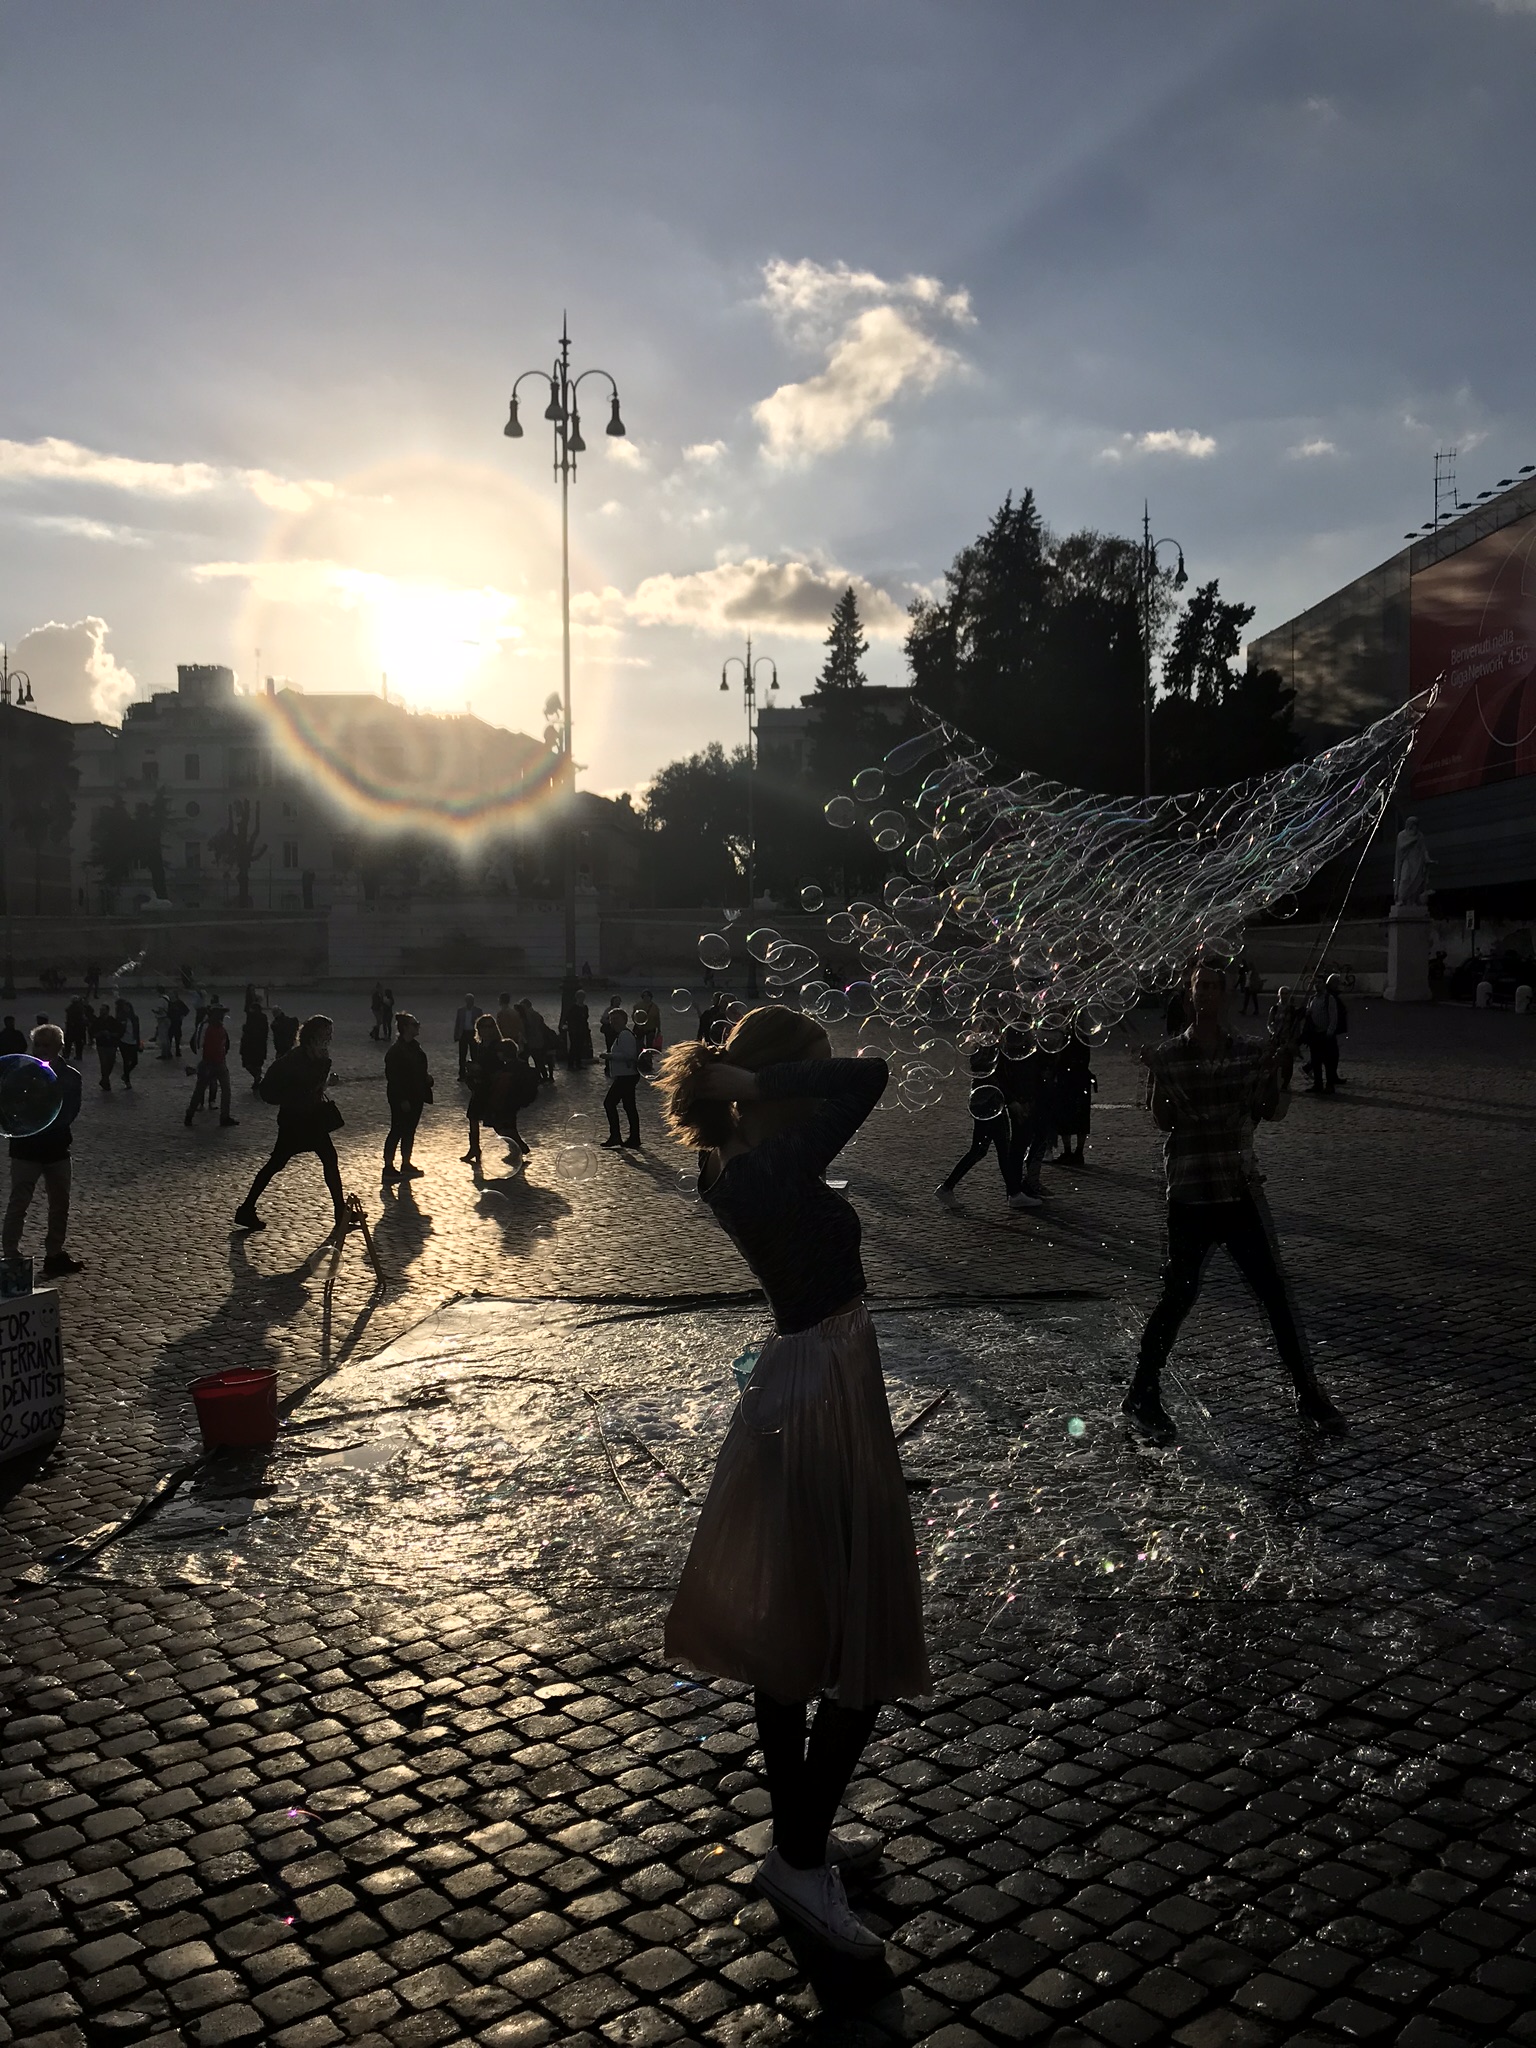 #009: Soap bubbles in Piazza del Popolo